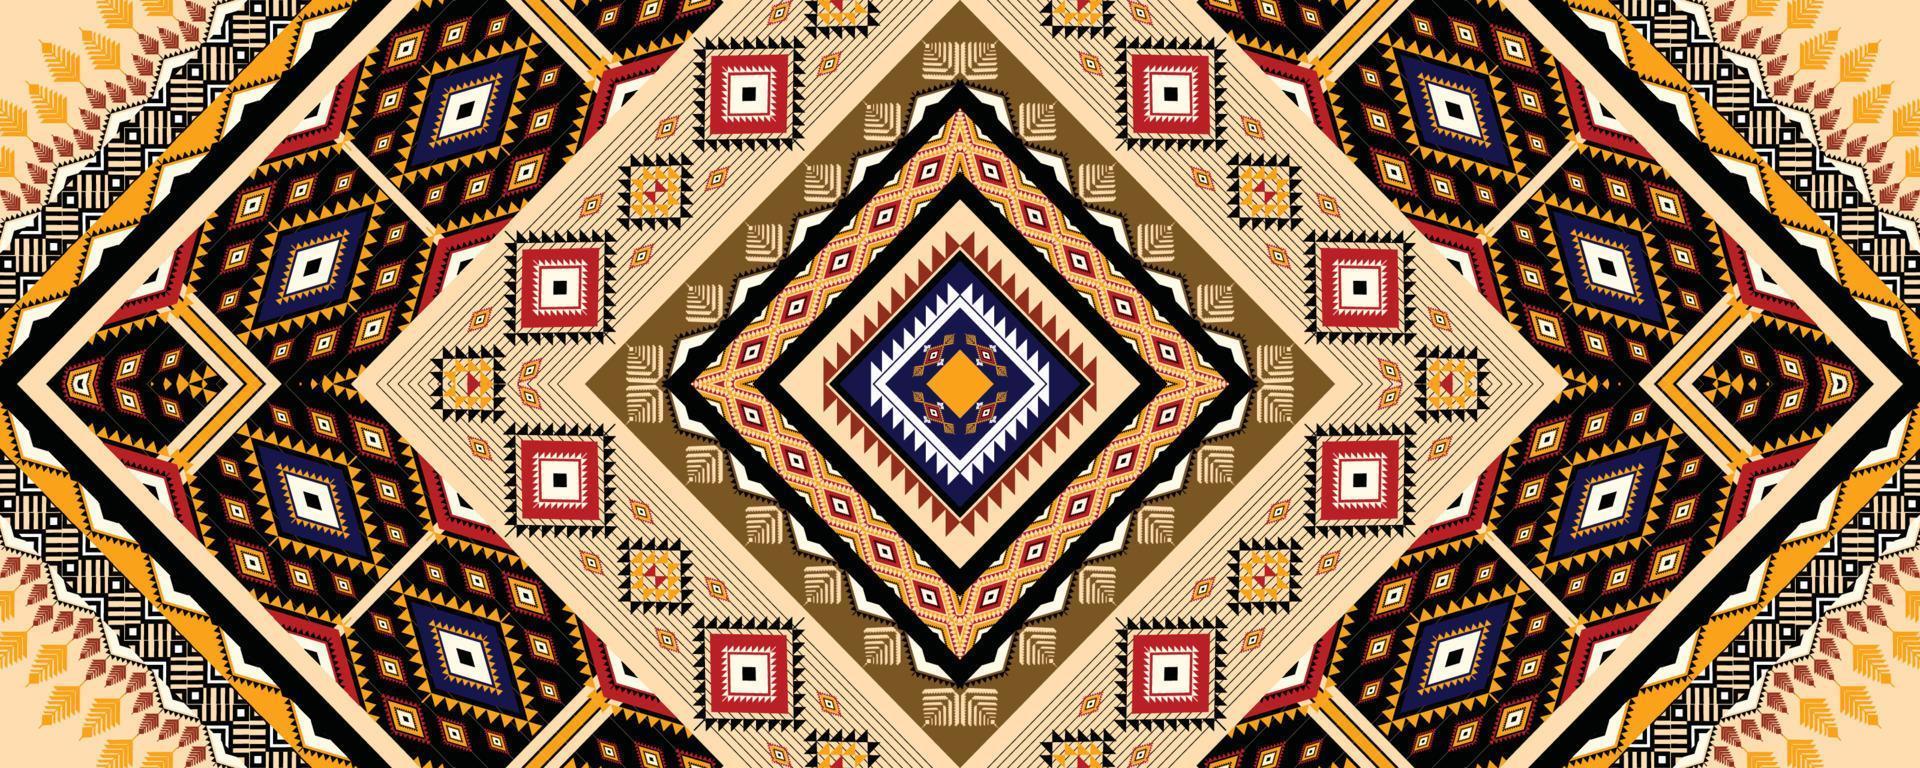 étnico geométrico americano, occidental, patrón de motivos aztecas diseño de patrones sin fisuras para tela, cortina, fondo, sarong, papel pintado, ropa, envoltura, batik, azulejo, interior.ilustración vectorial. vector